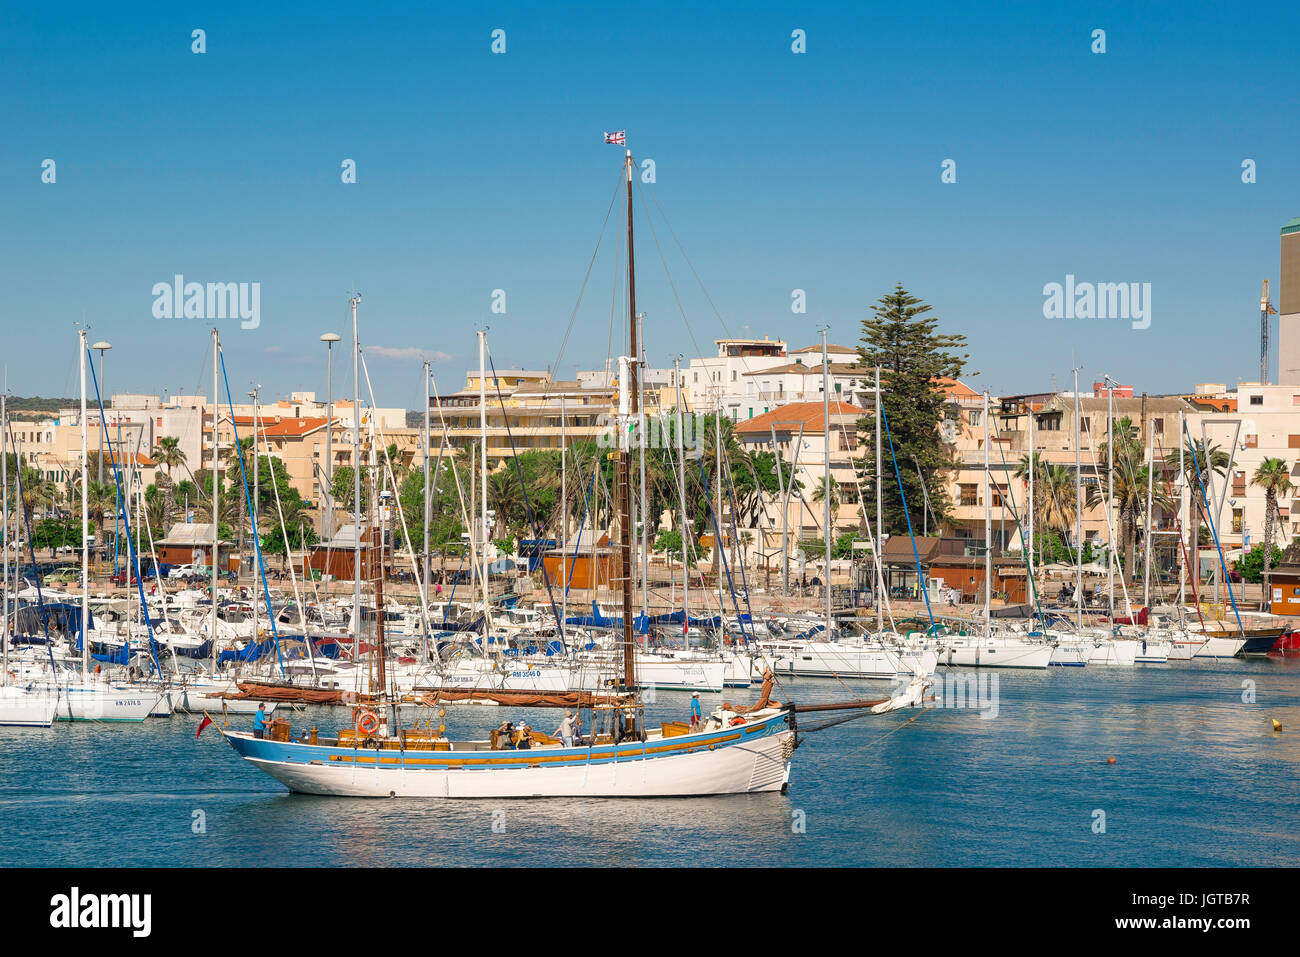 Porto di Alghero Sardegna, una barca a vela usato per le escursioni turistiche ritorna al porto di Alghero, Sardegna, dopo un pomeriggio escursione lungo la costa. Foto Stock